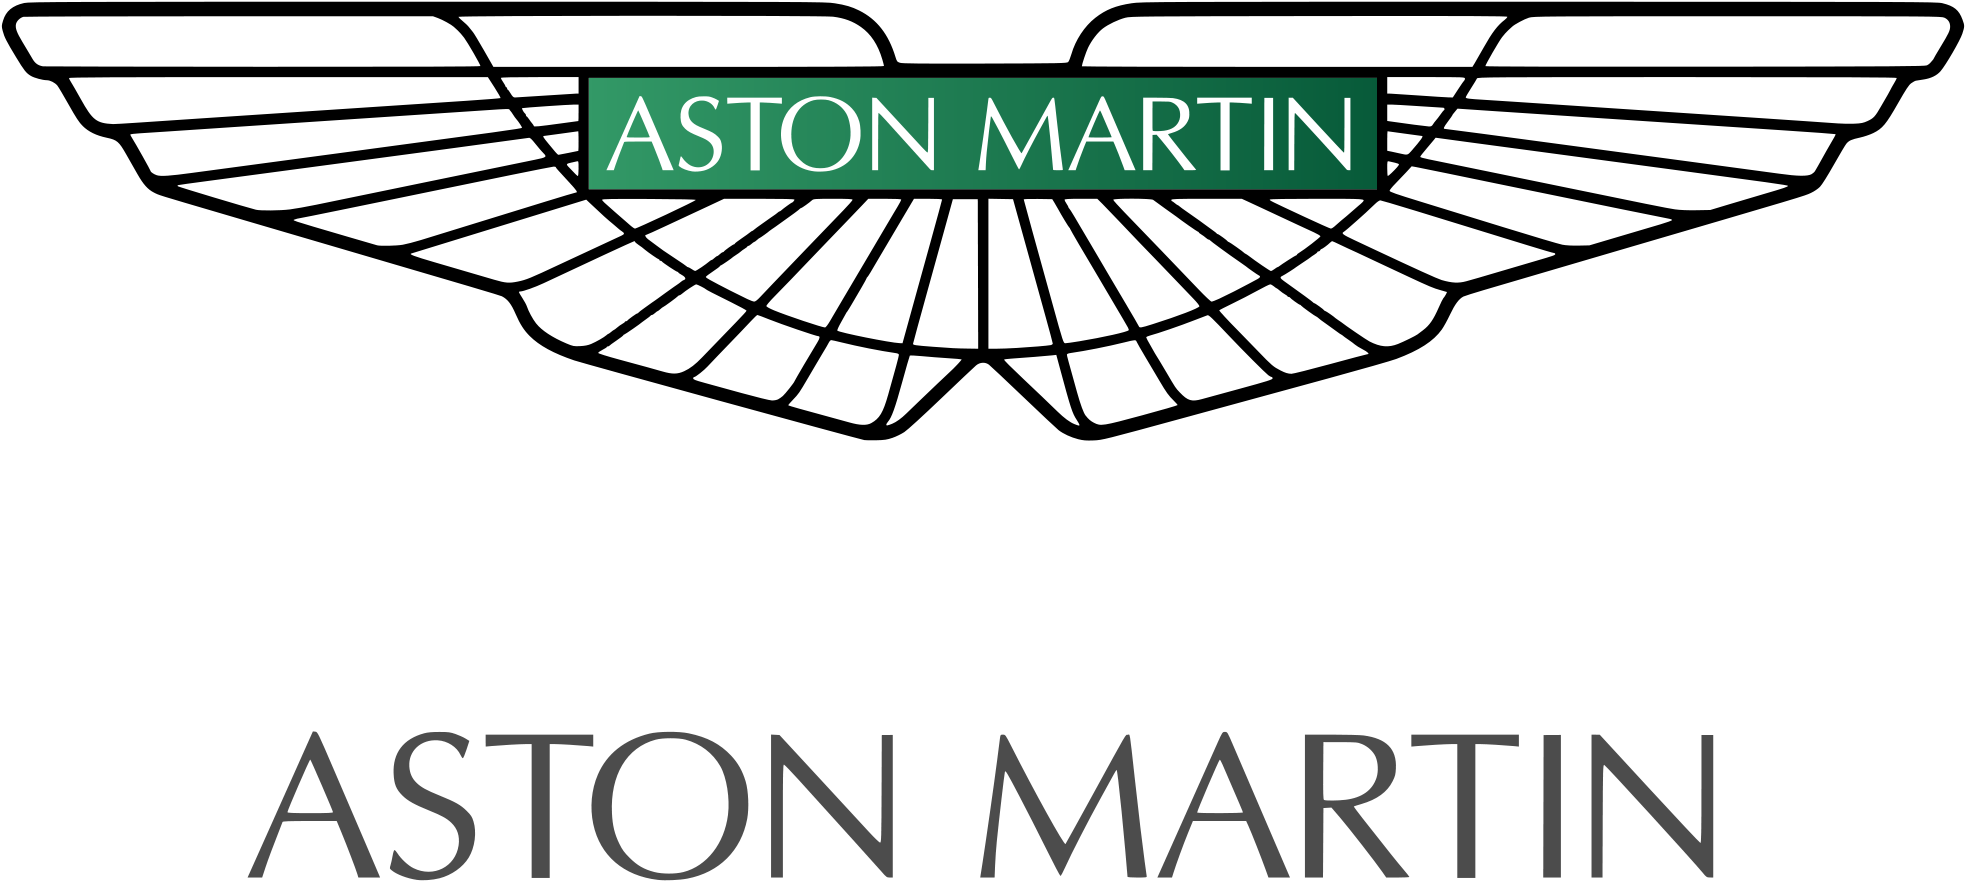 Aston Martin, British Car Company Logo - Aston Martin Car Brand (2000x920)